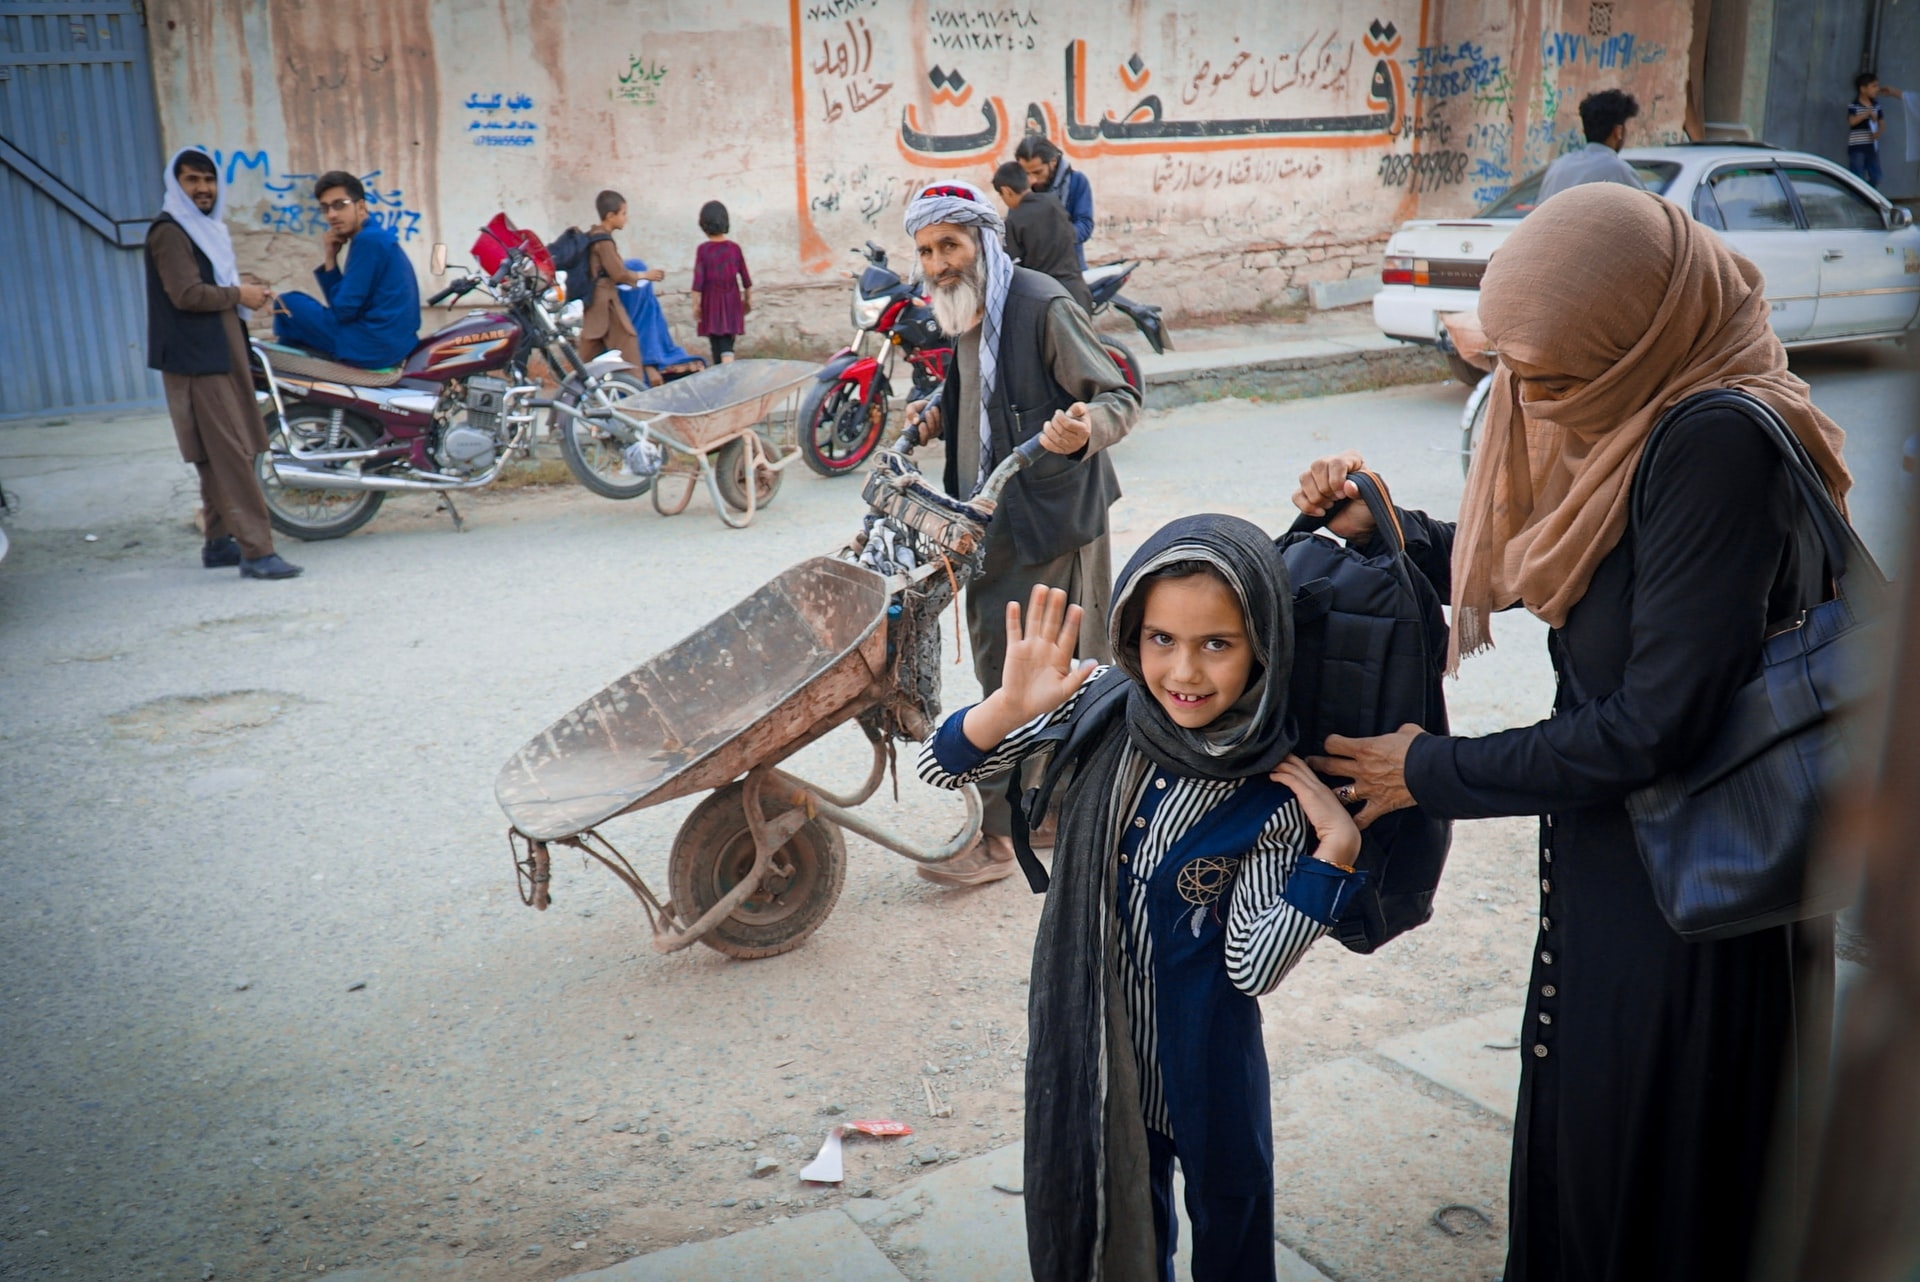 Ei jente på vei til skolen i Afghanistan i november 2021. PRIO arrangerer webinarer om situasjonen i landet denne uka. Foto: Unsplash/Wanman Uthmaniyyah